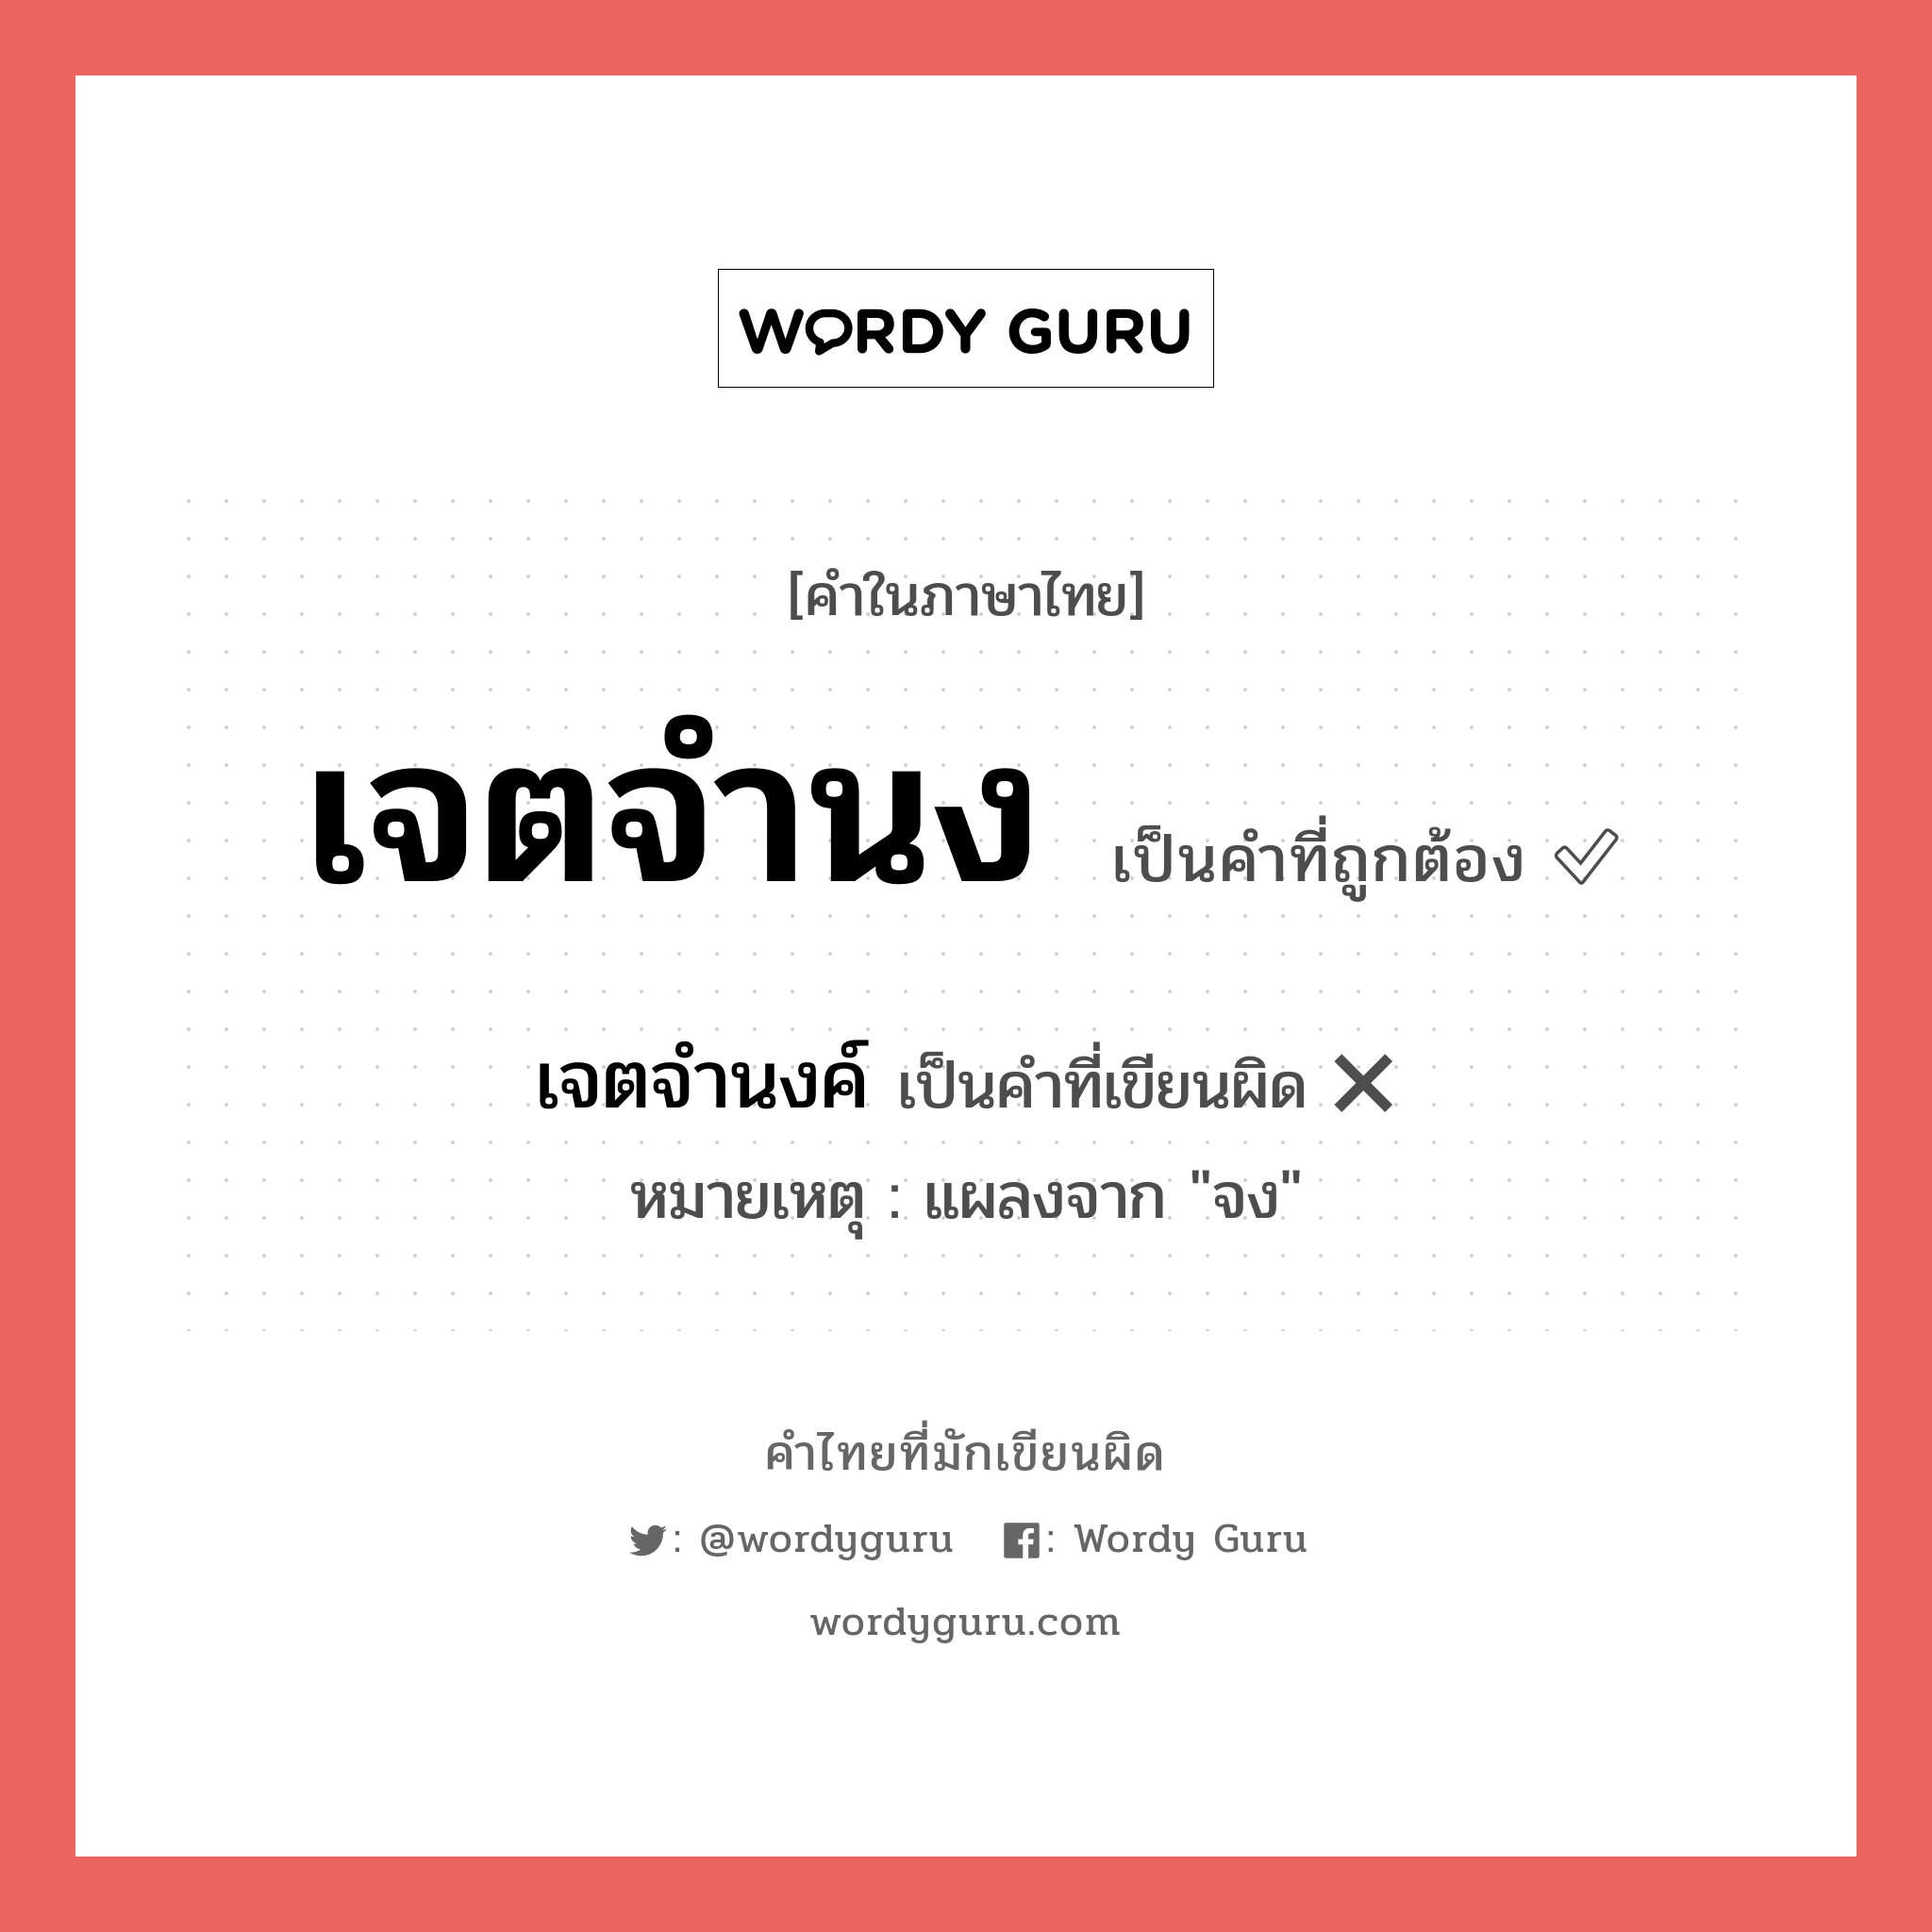 เจตจำนง หรือ เจตจำนงค์ เขียนยังไง? คำไหนเขียนถูก?, คำในภาษาไทยที่มักเขียนผิด เจตจำนง คำที่ผิด ❌ เจตจำนงค์ หมายเหตุ แผลงจาก "จง"